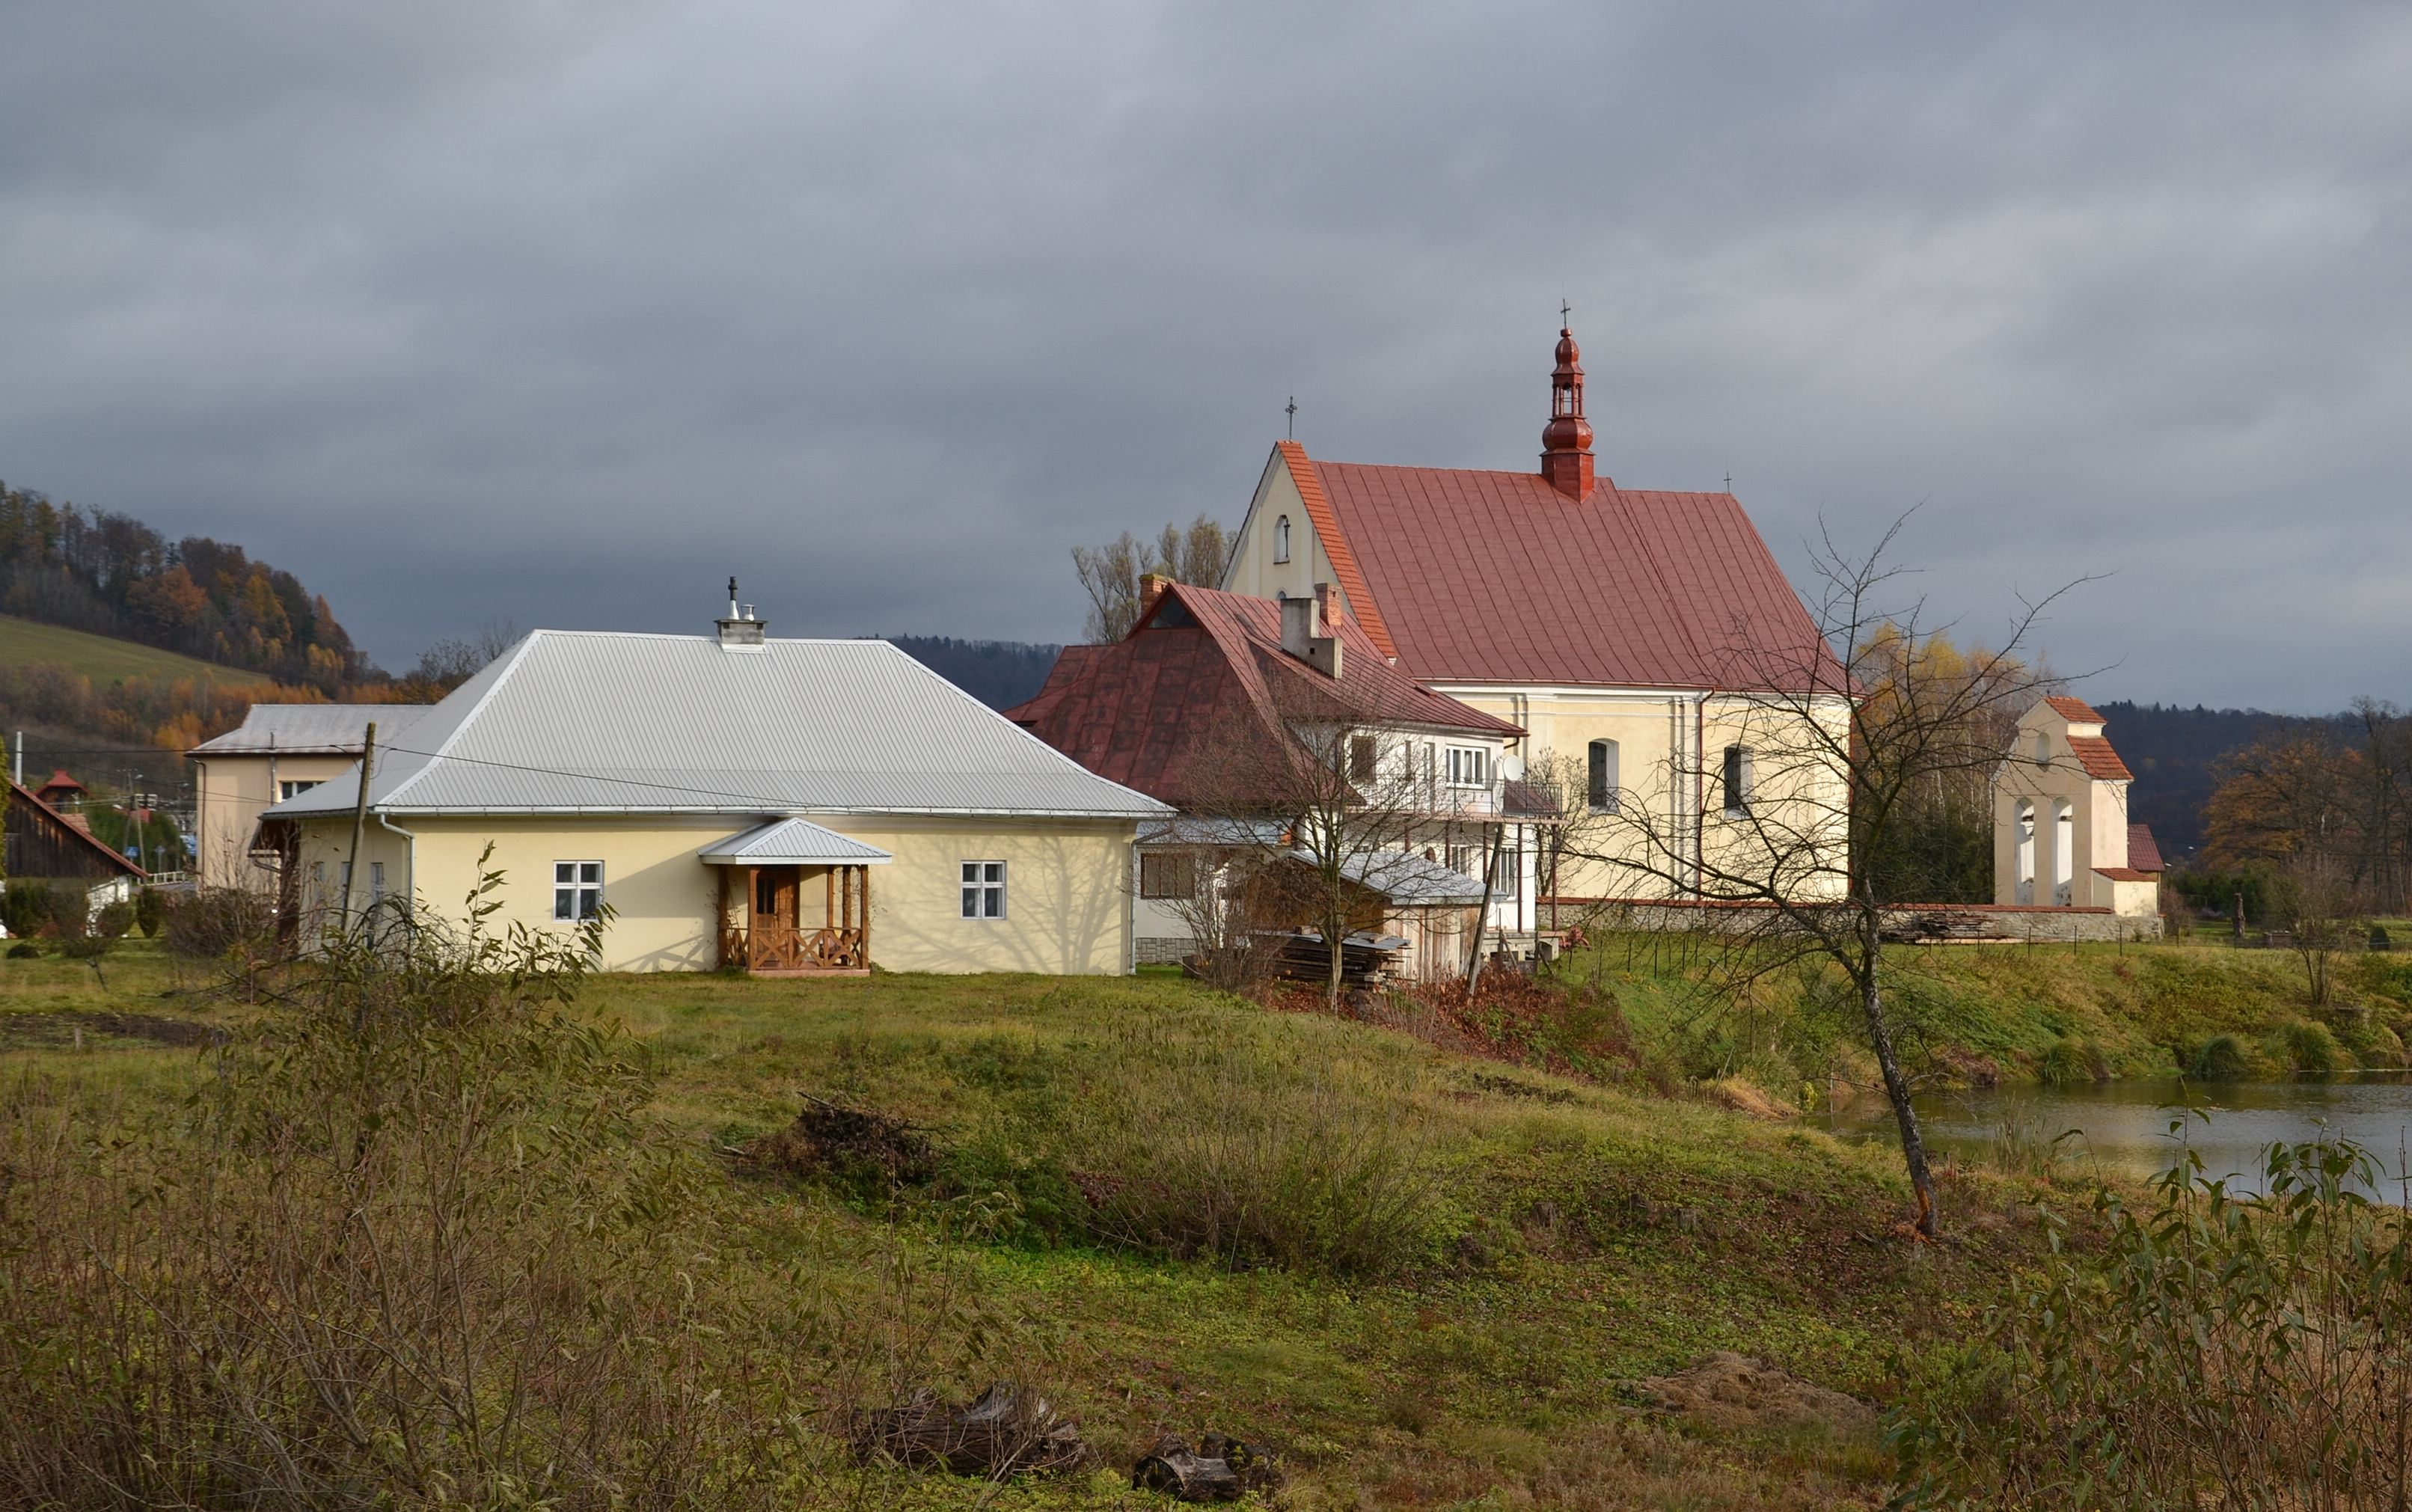 Hoczew (Гічва) - church